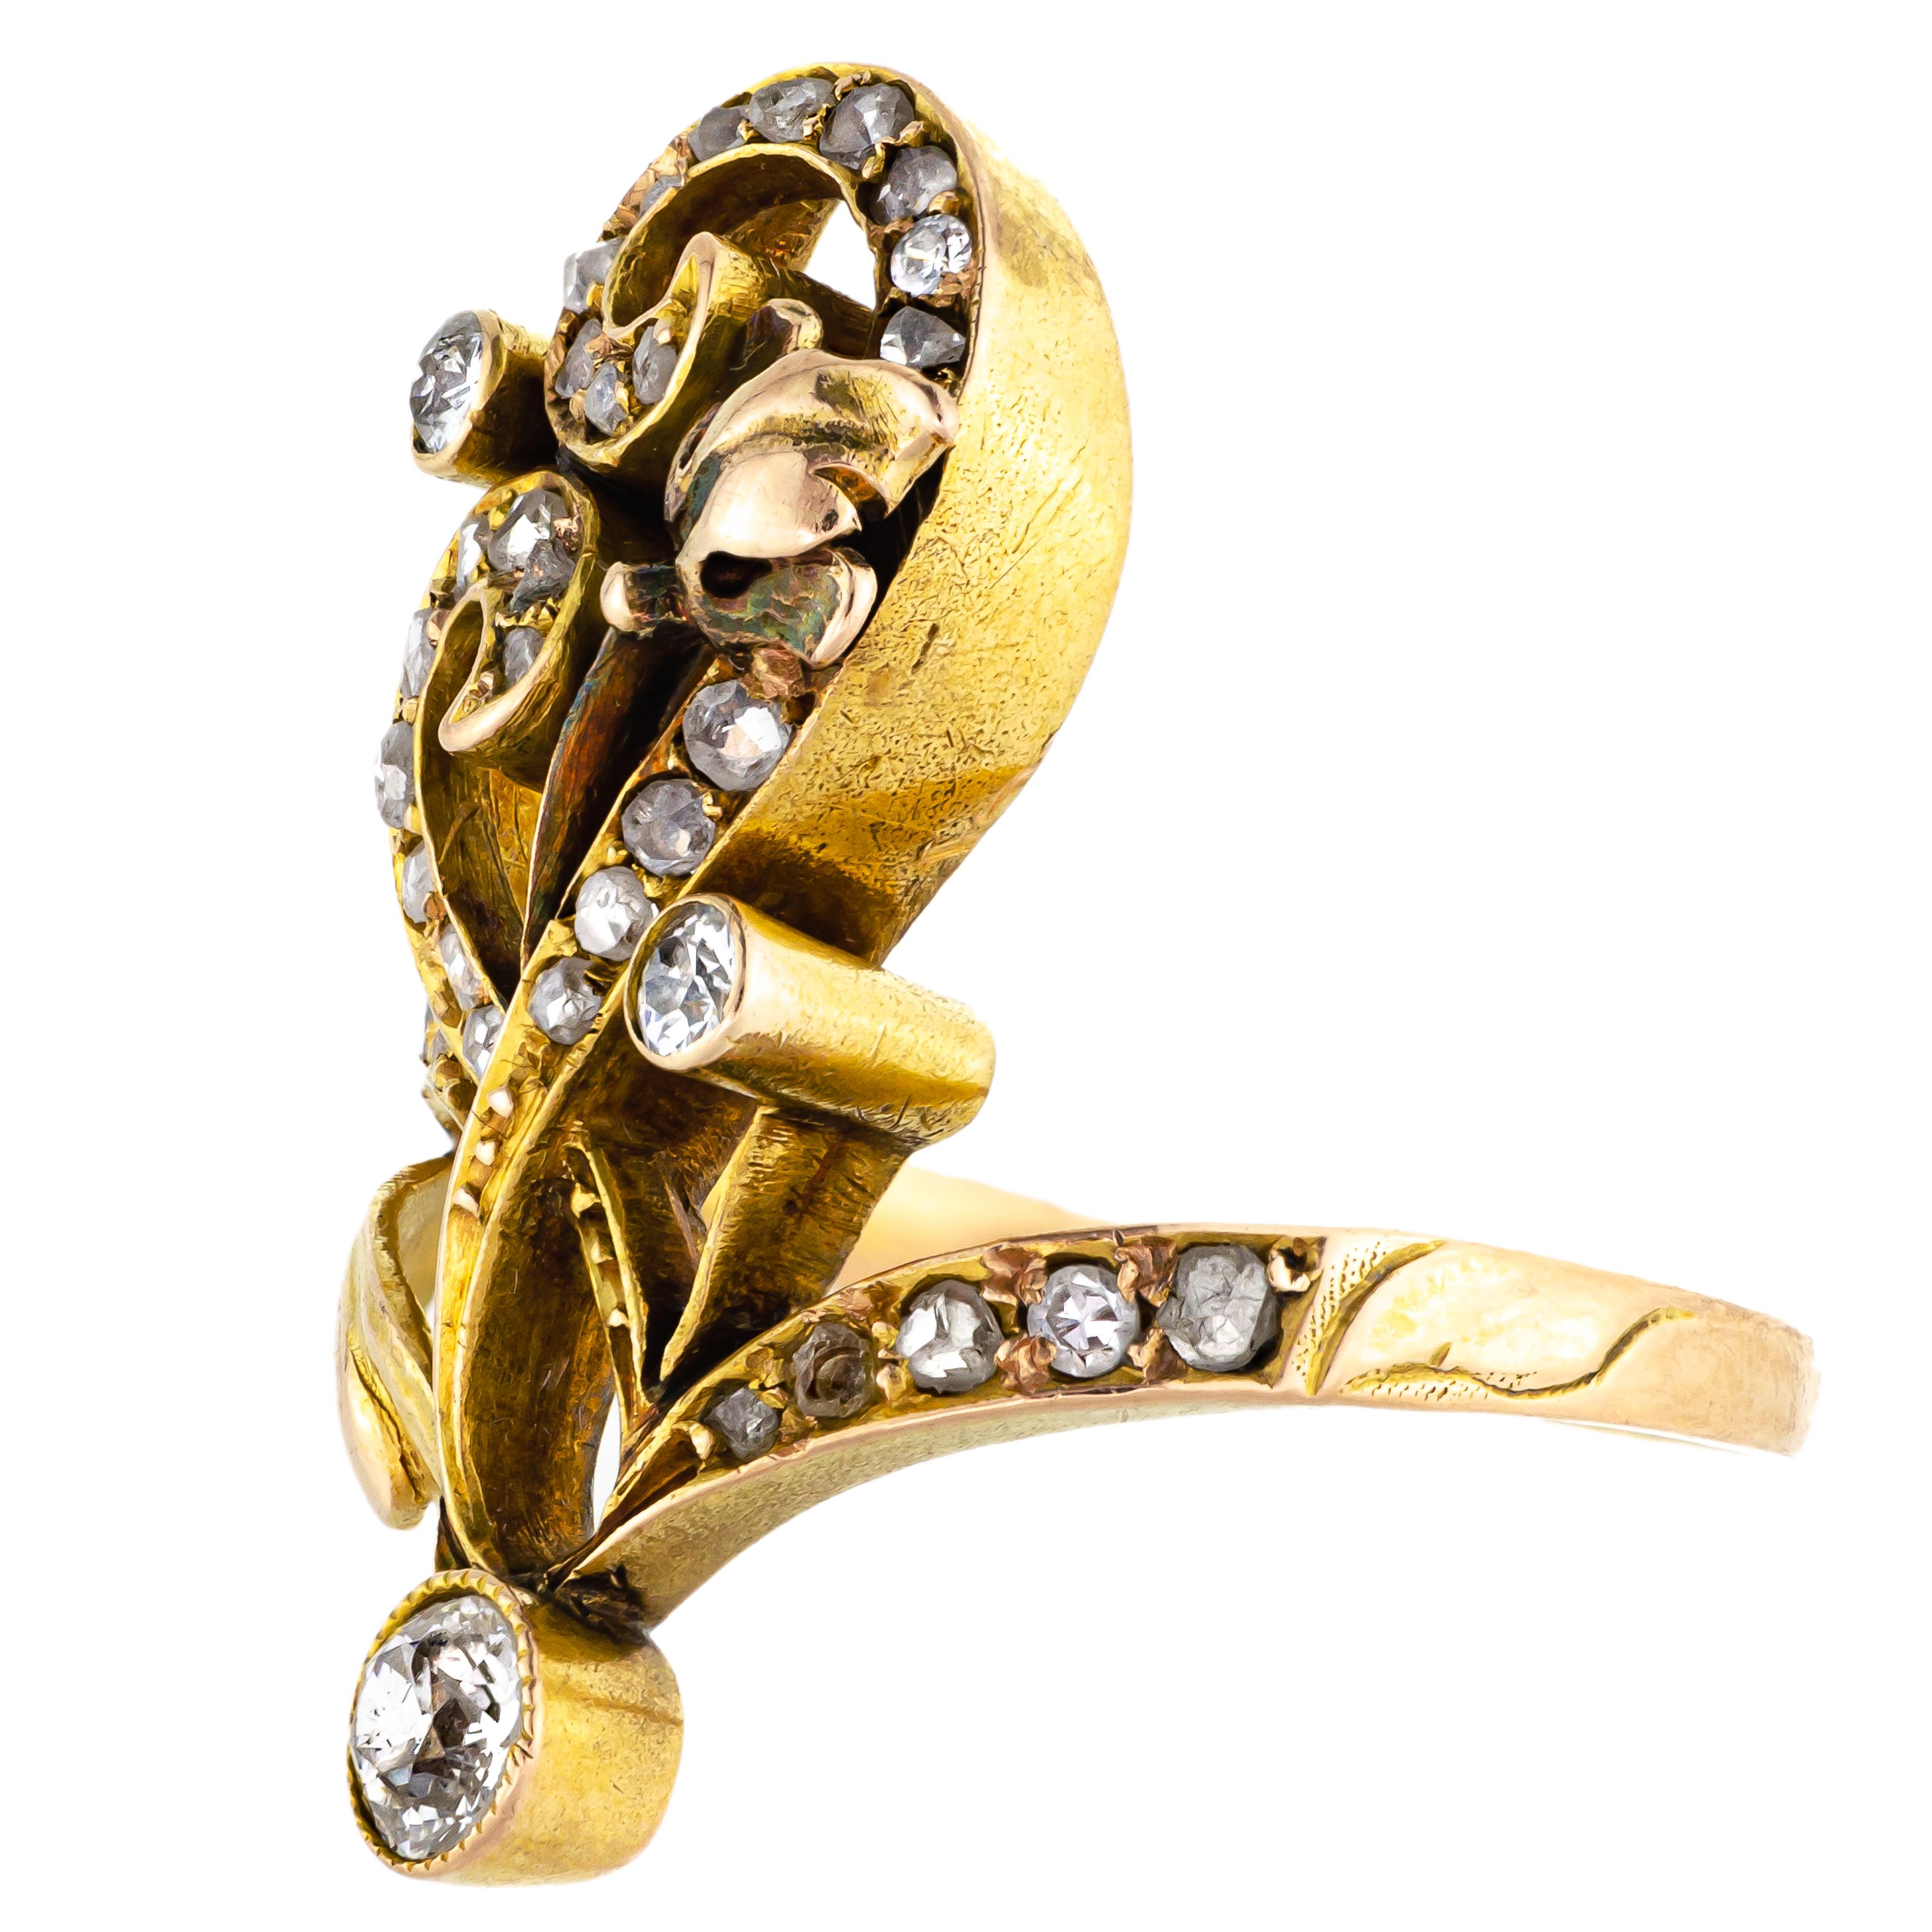 Cette élégante bague longue en or jaune 18kt et diamants Art Nouveau datant de 1900 est un bel exemple de la fluidité du mouvement Art Nouveau. Le motif féminin de la fleur stylisée en forme de tourbillon est réalisé en or jaune 18 carats (testé) et